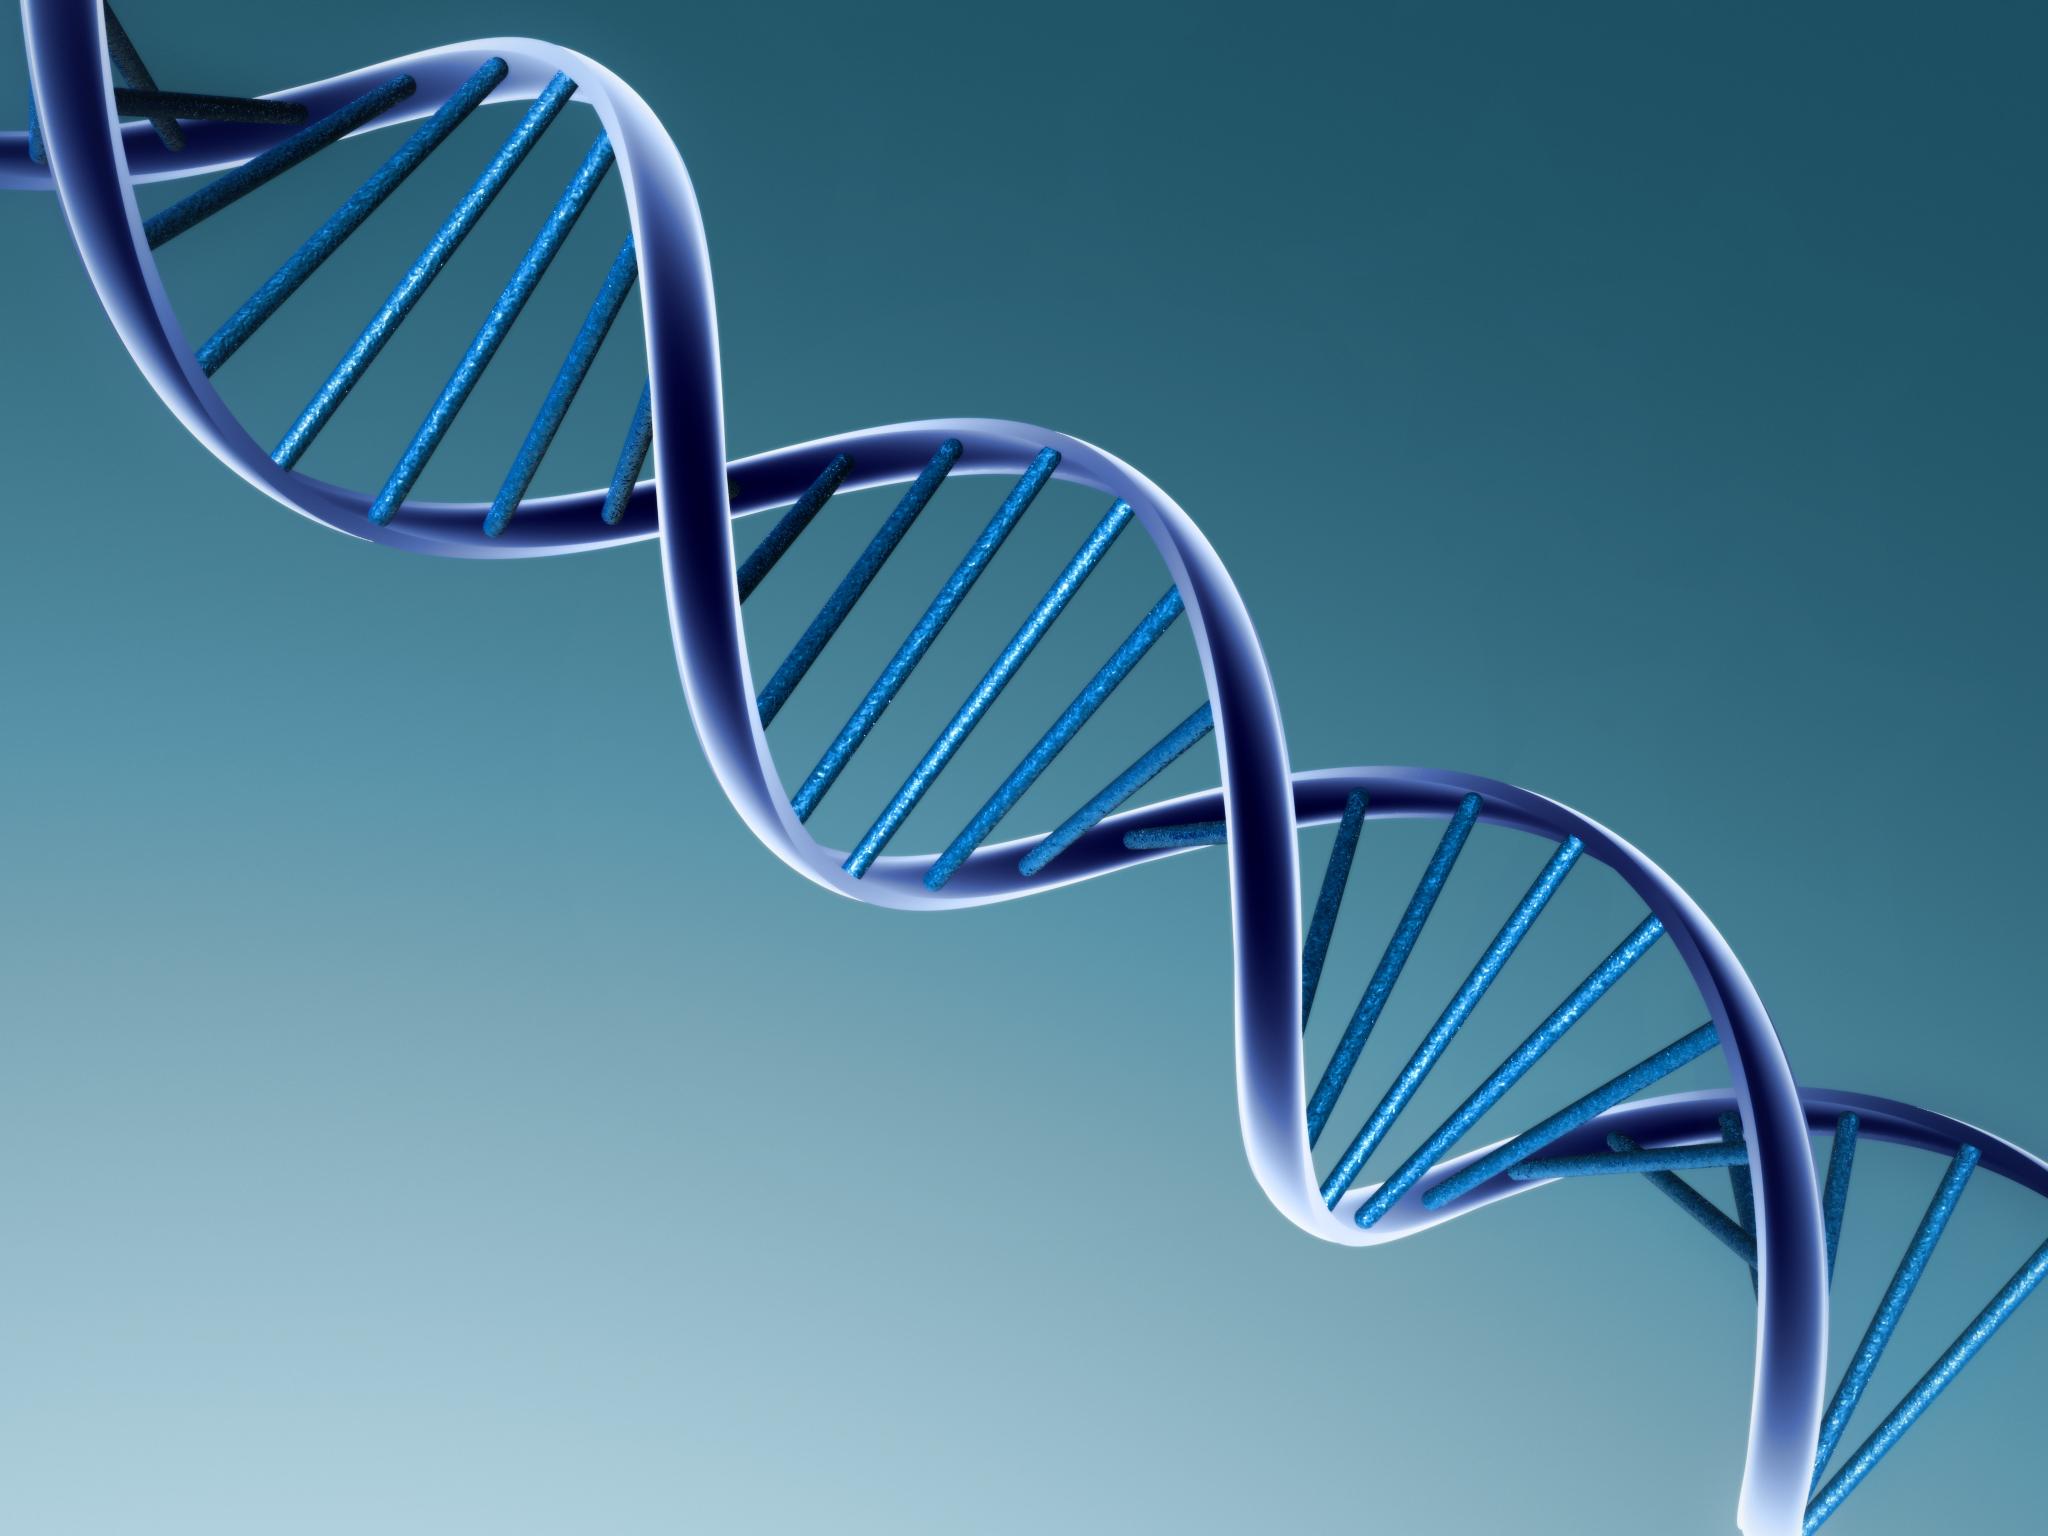 Ministério da Saúde planeja oferecer aconselhamento genético para prevenção de doenças hereditárias